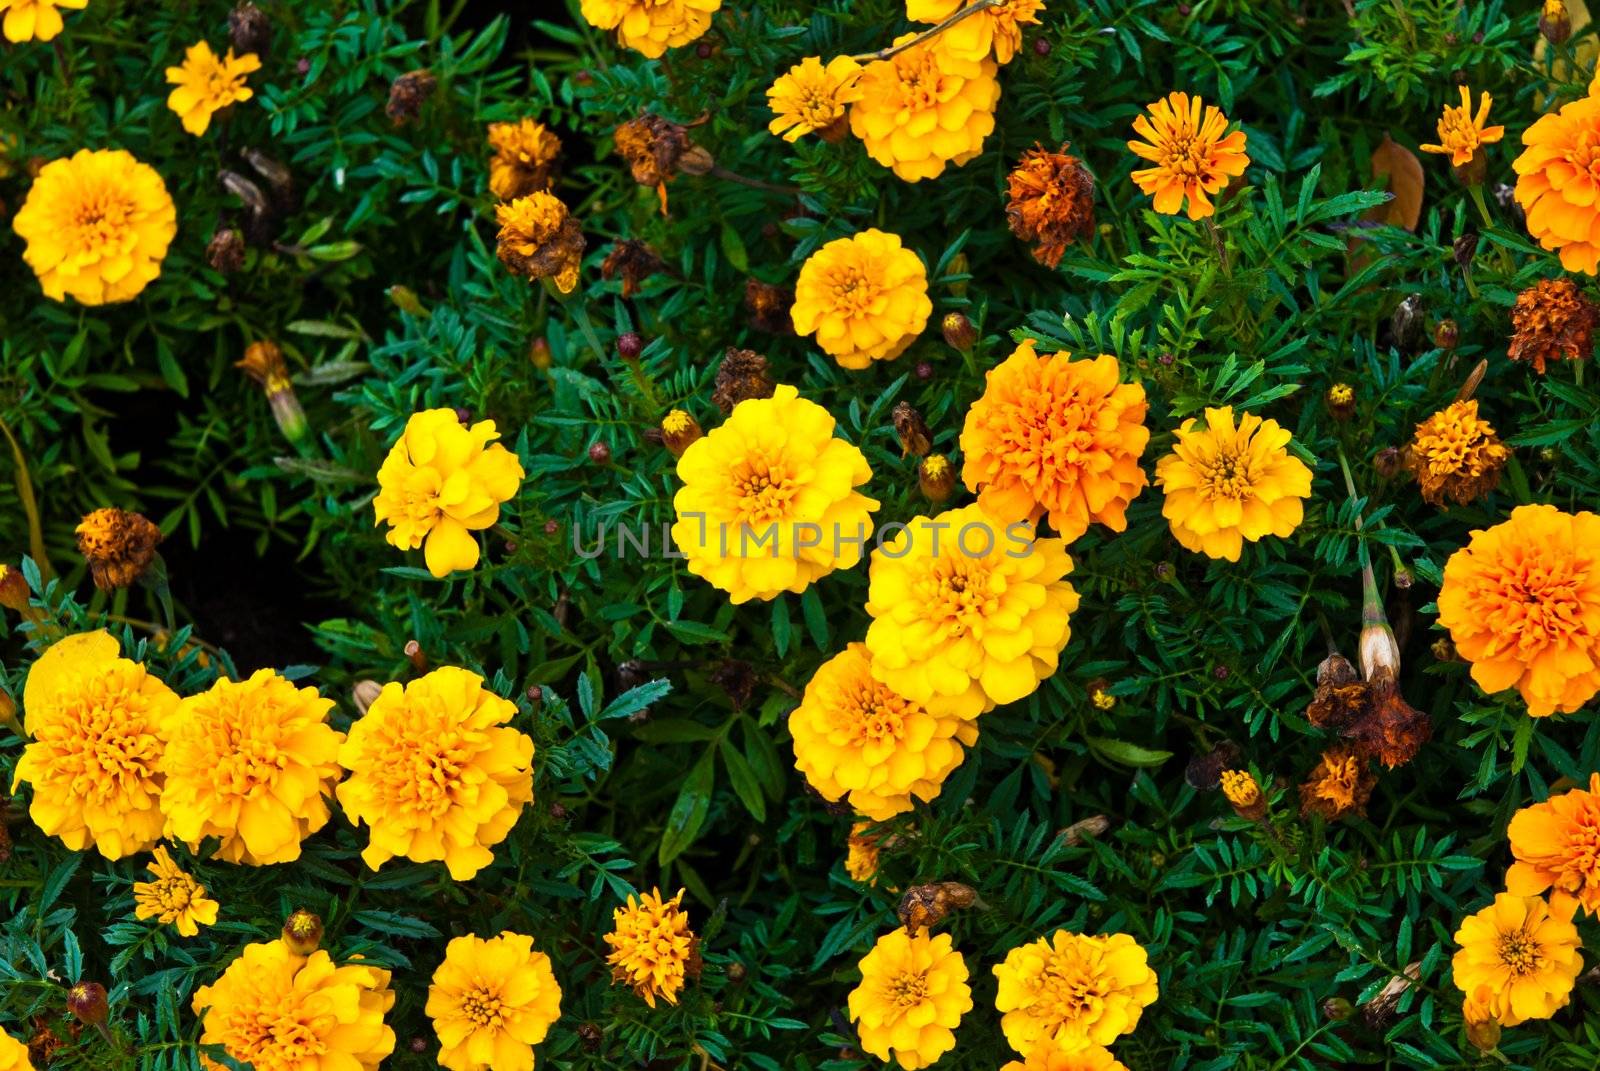 Yellow garden flower on grass
 by sasilsolutions